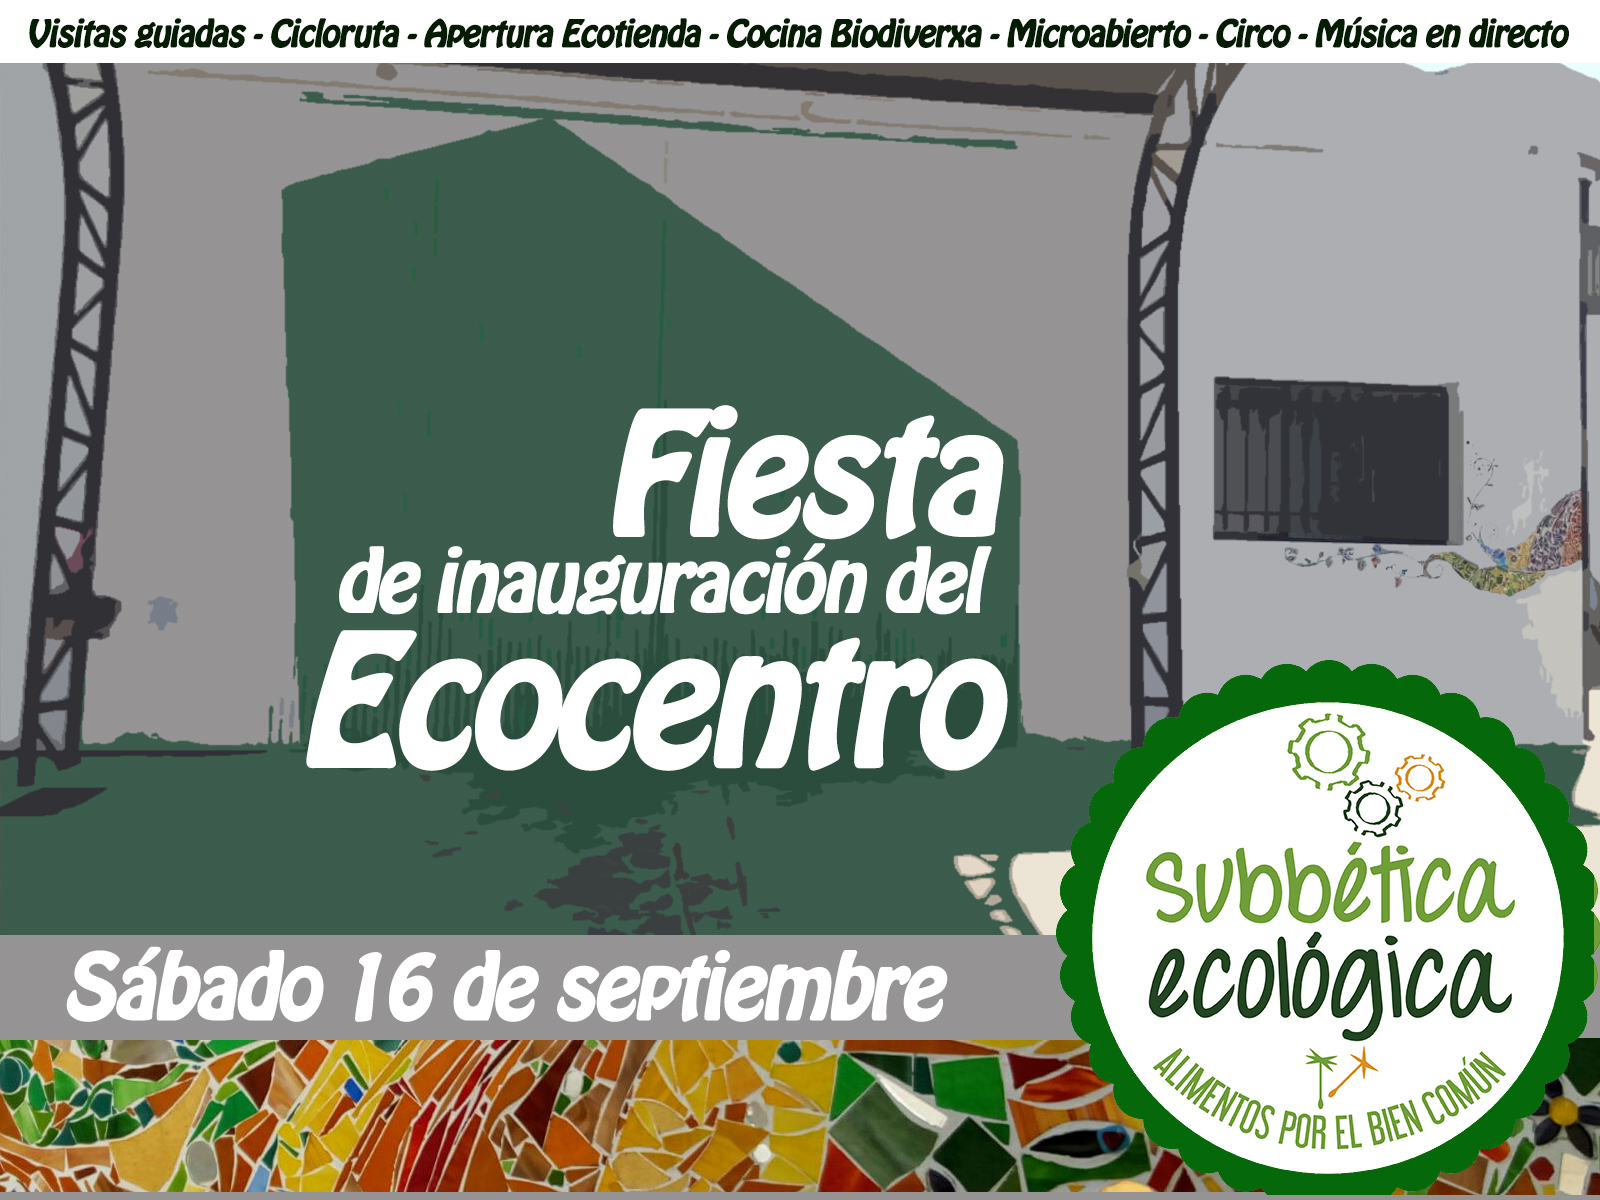 Fiesta inauguración del Ecocentro